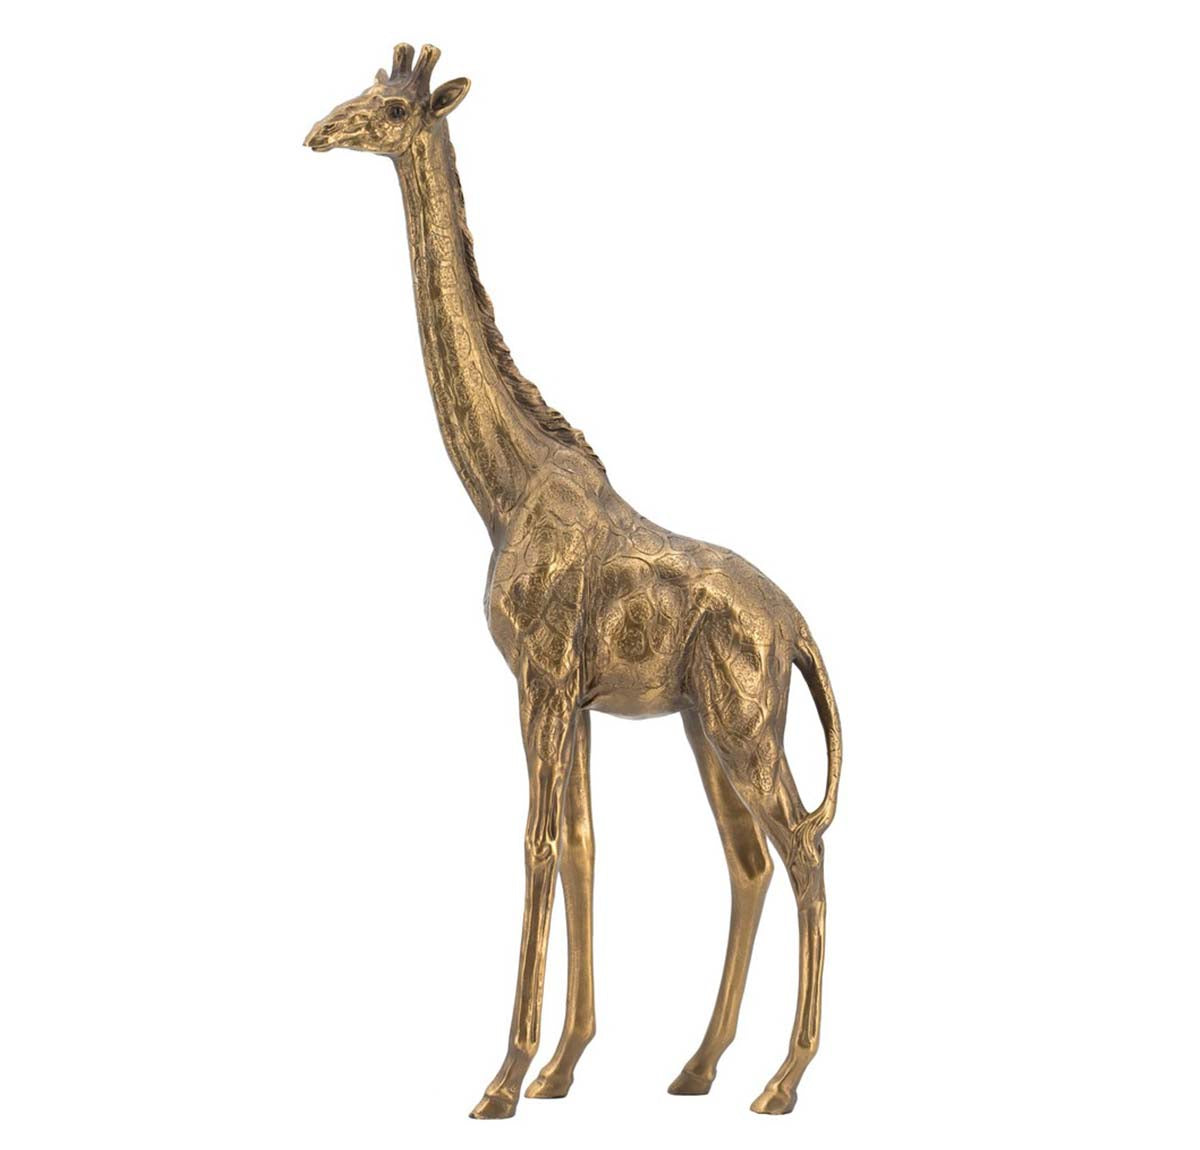 Lawrence Longneck Giraffe Statue - Gold | Small Decor | Ornament | Home Decor